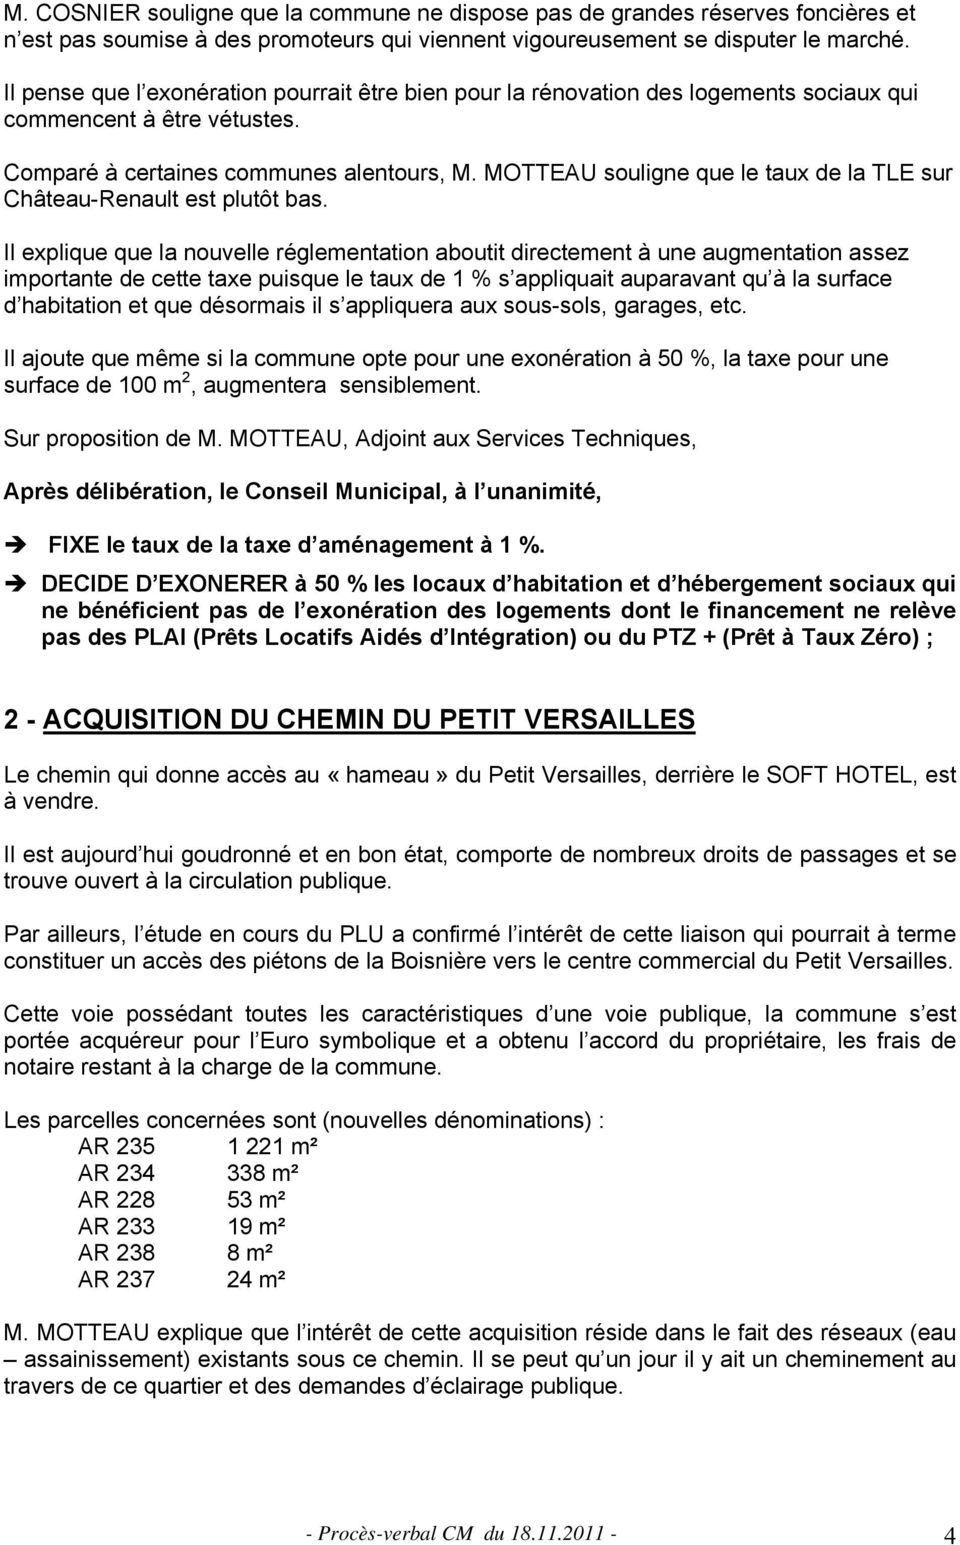 MOTTEAU souligne que le taux de la TLE sur Château-Renault est plutôt bas.